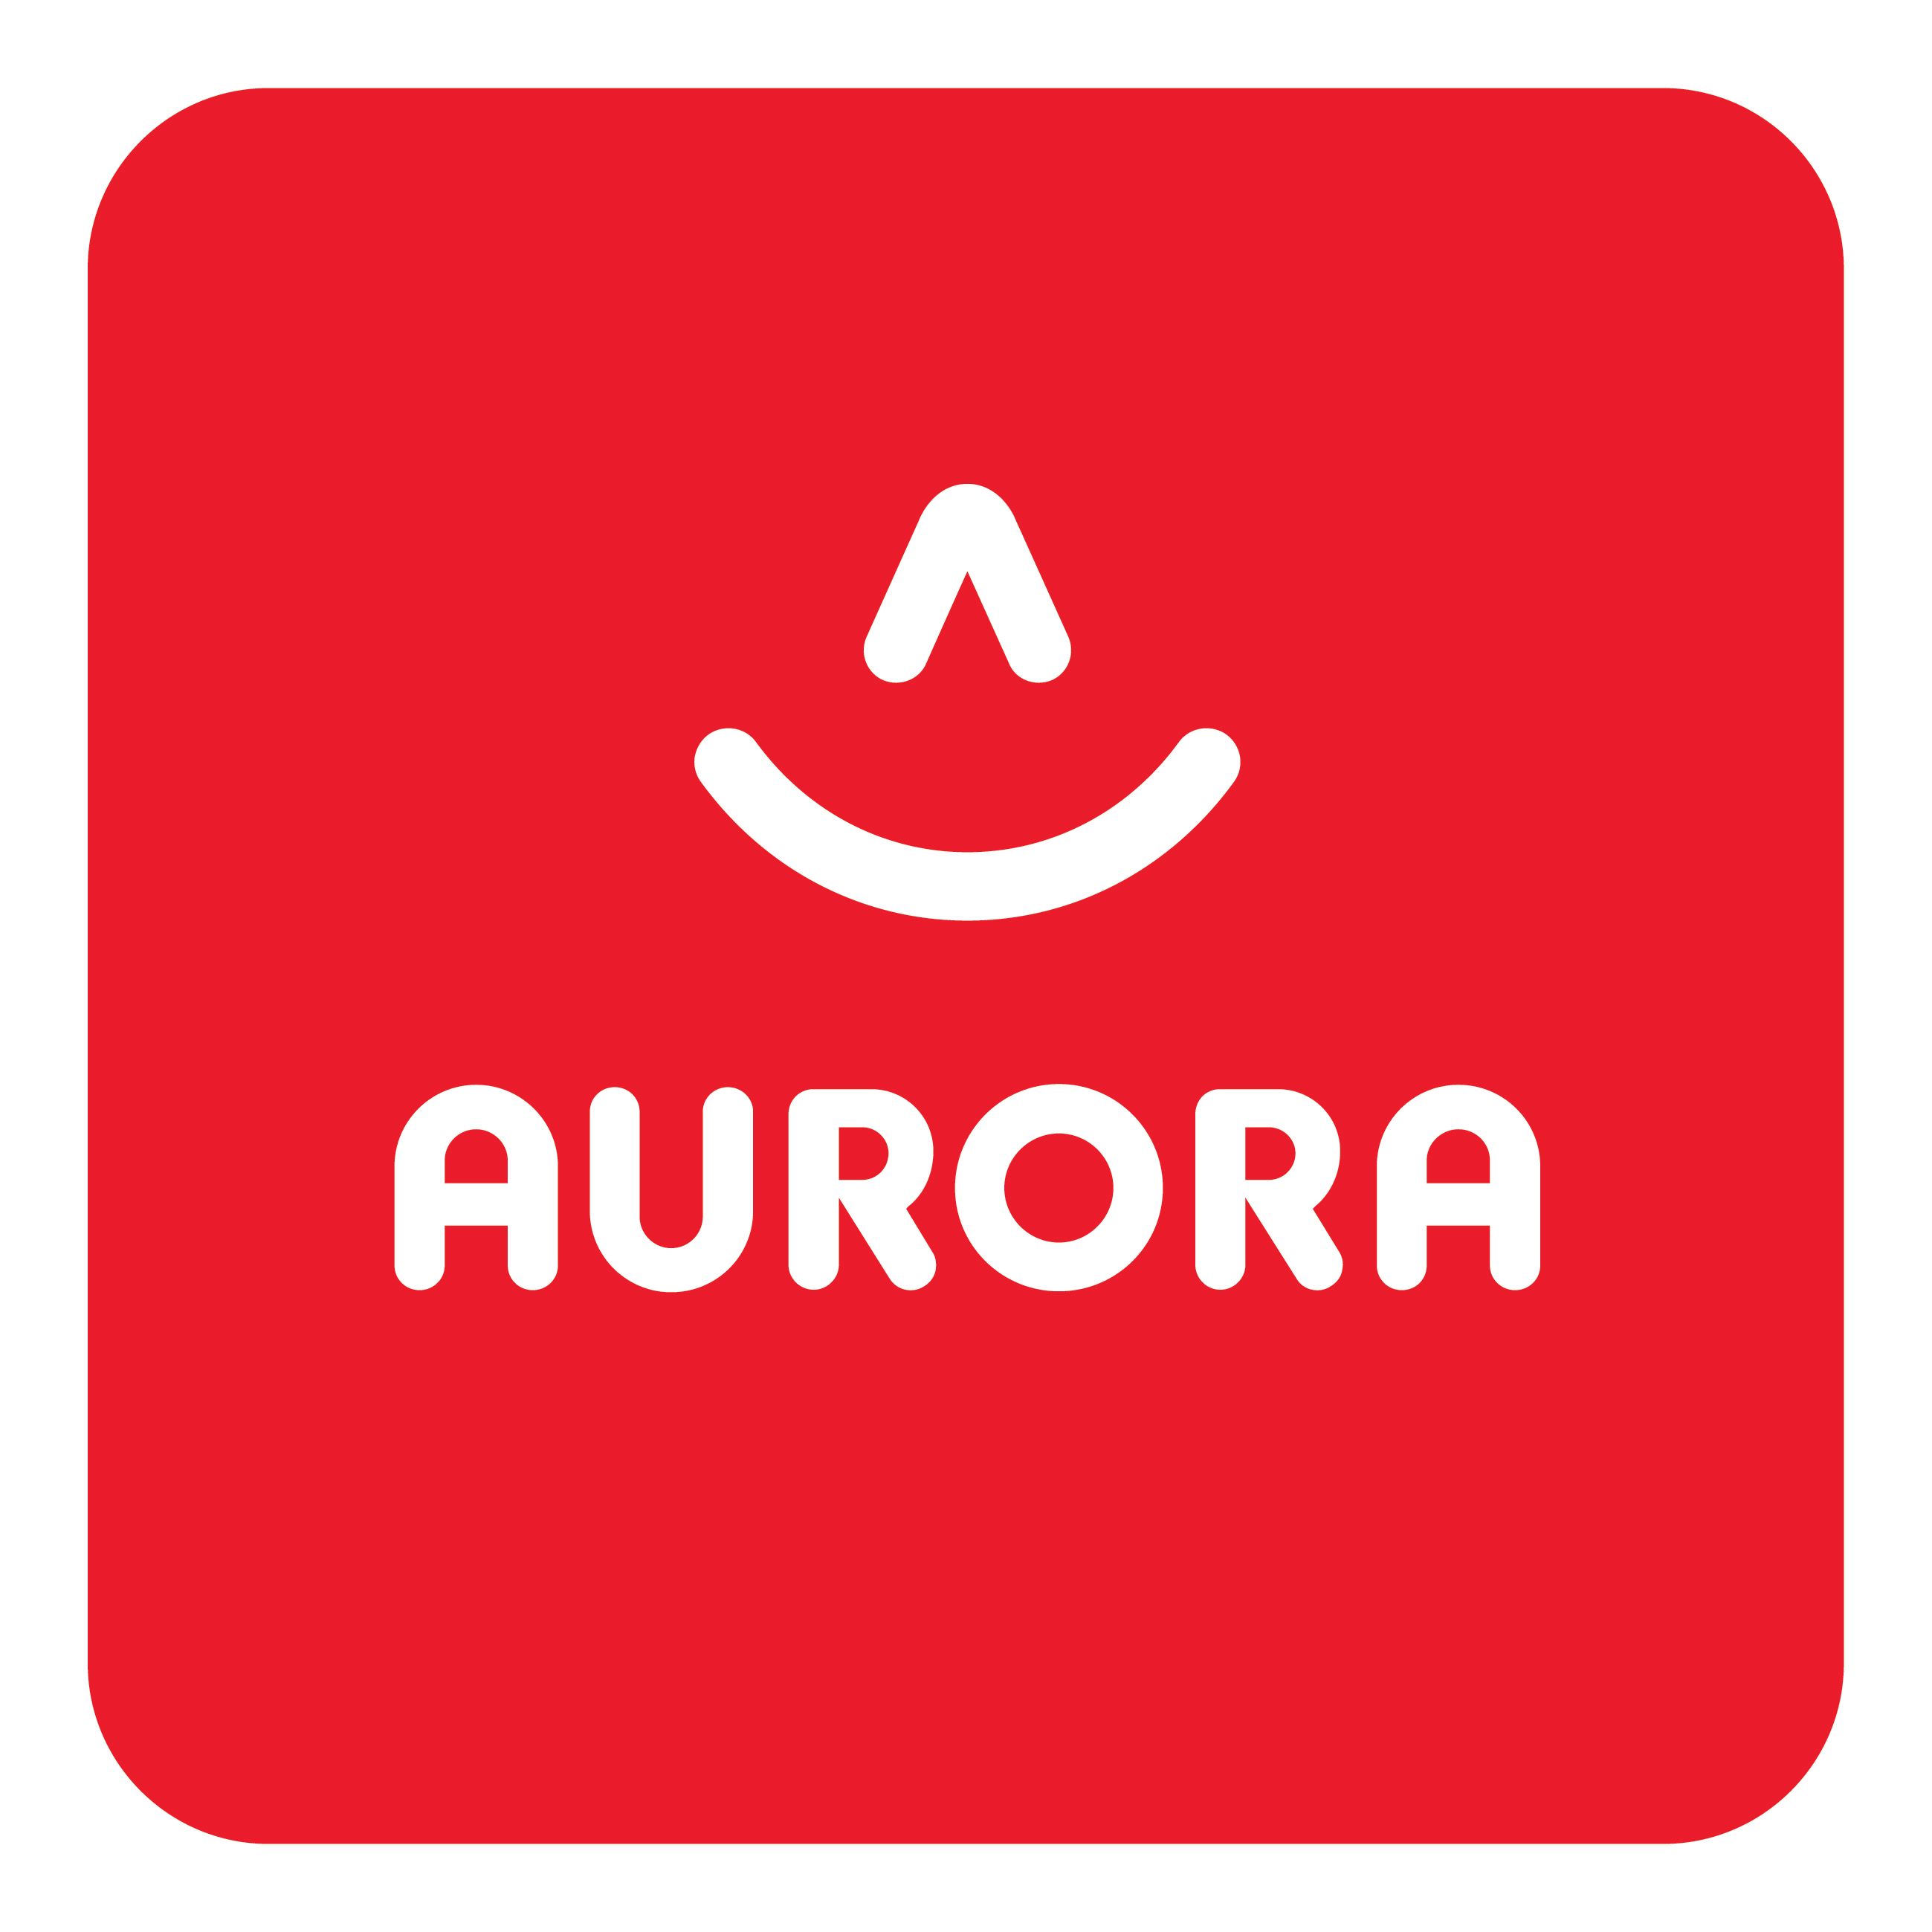 Aurora World Ltd